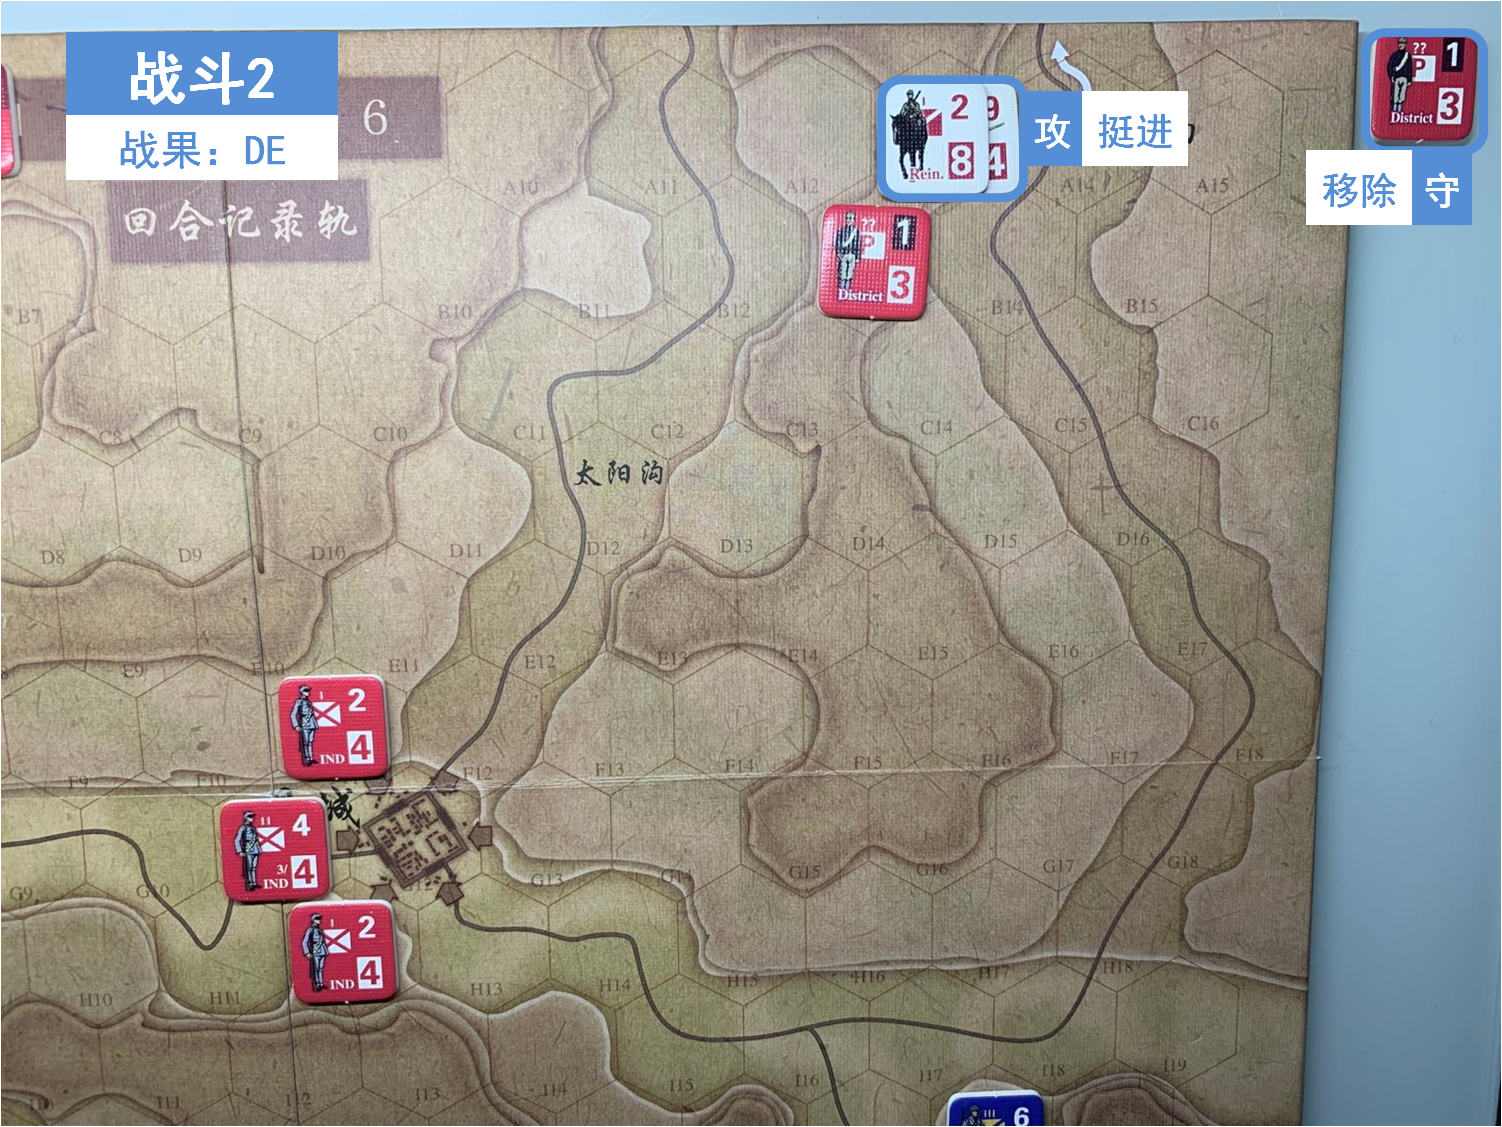 第一回合 日方戰鬥階段 戰鬥2 戰鬥結果